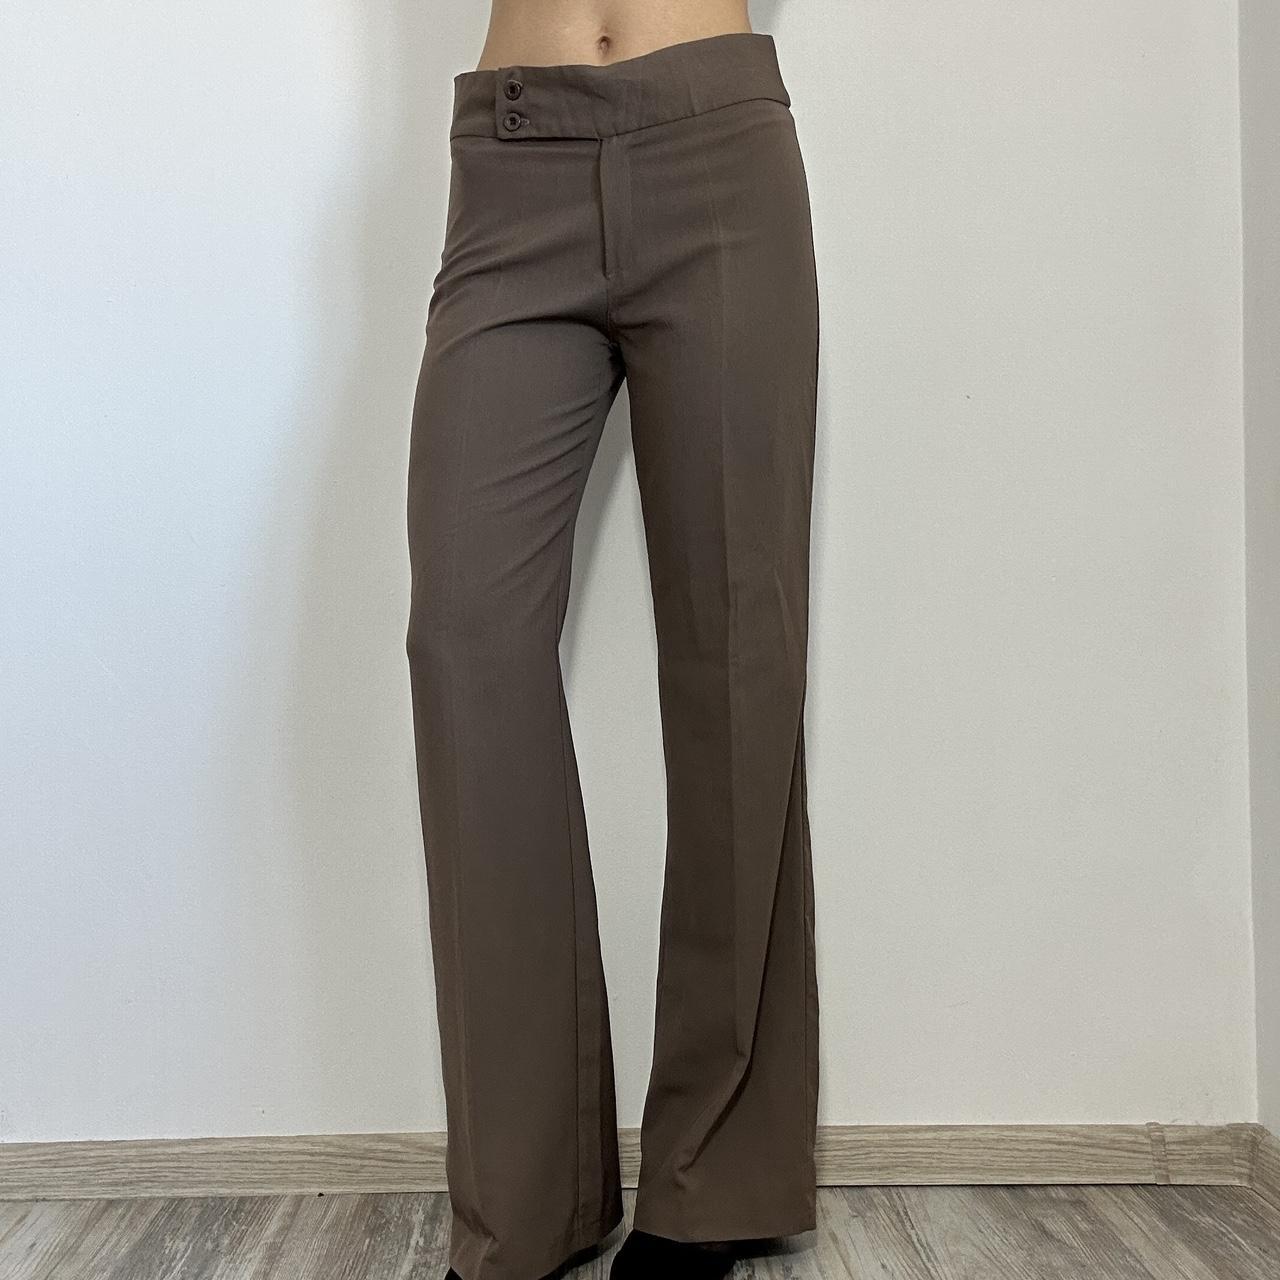 90s wide leg pants brown dress pants Vintage y2k - Depop